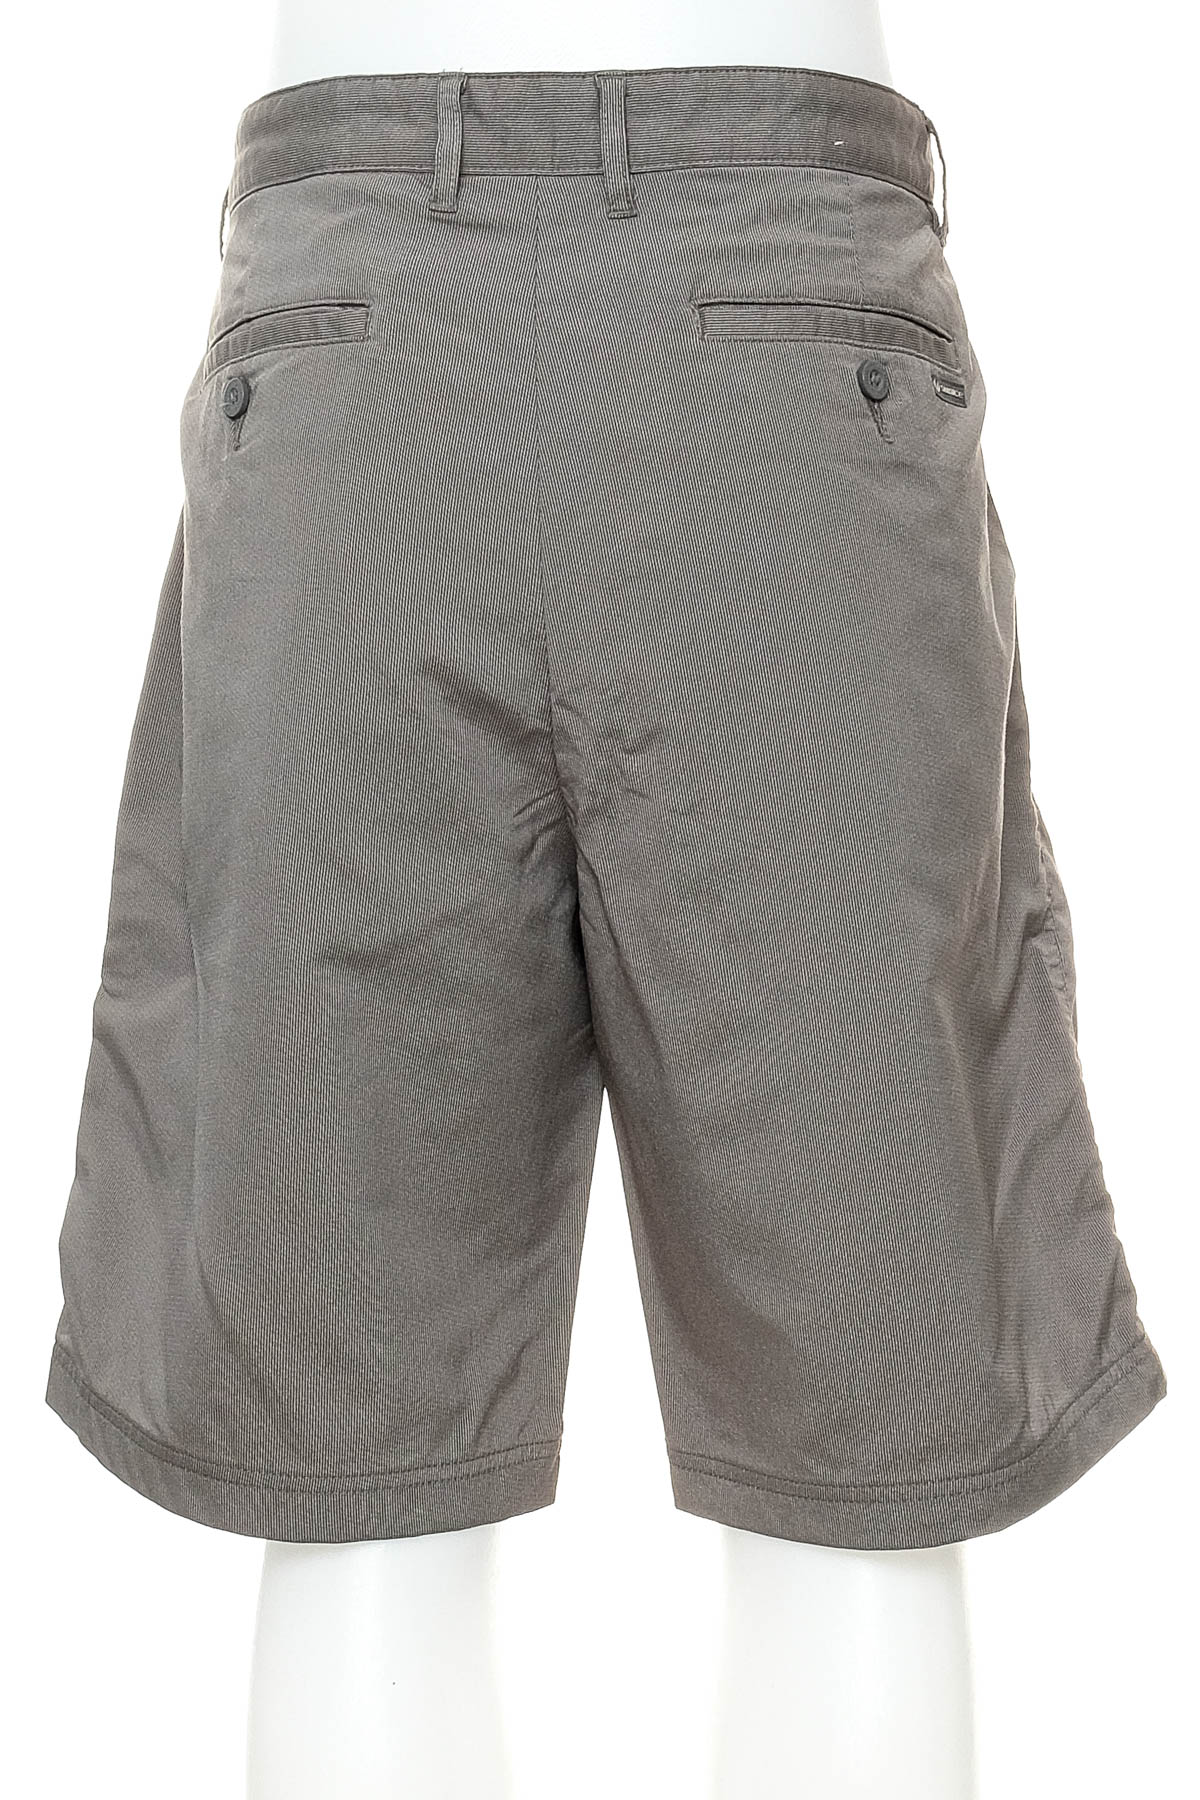 Men's shorts - Sunice - 1